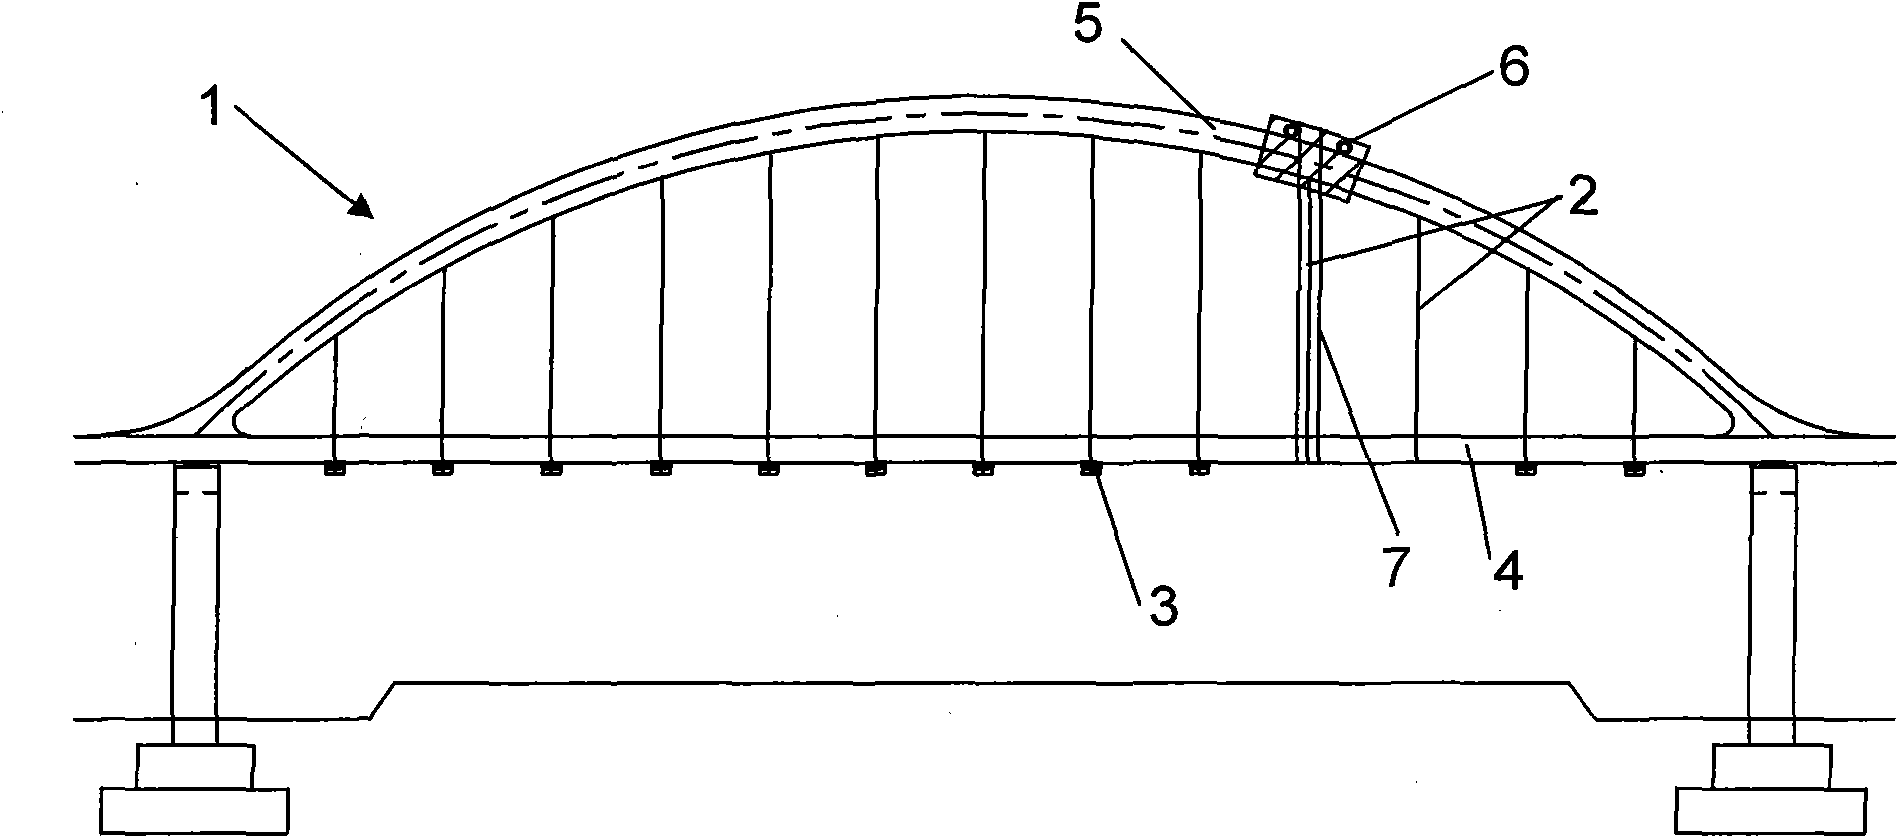 Suspender replacement method for tie bar type overpass bridge